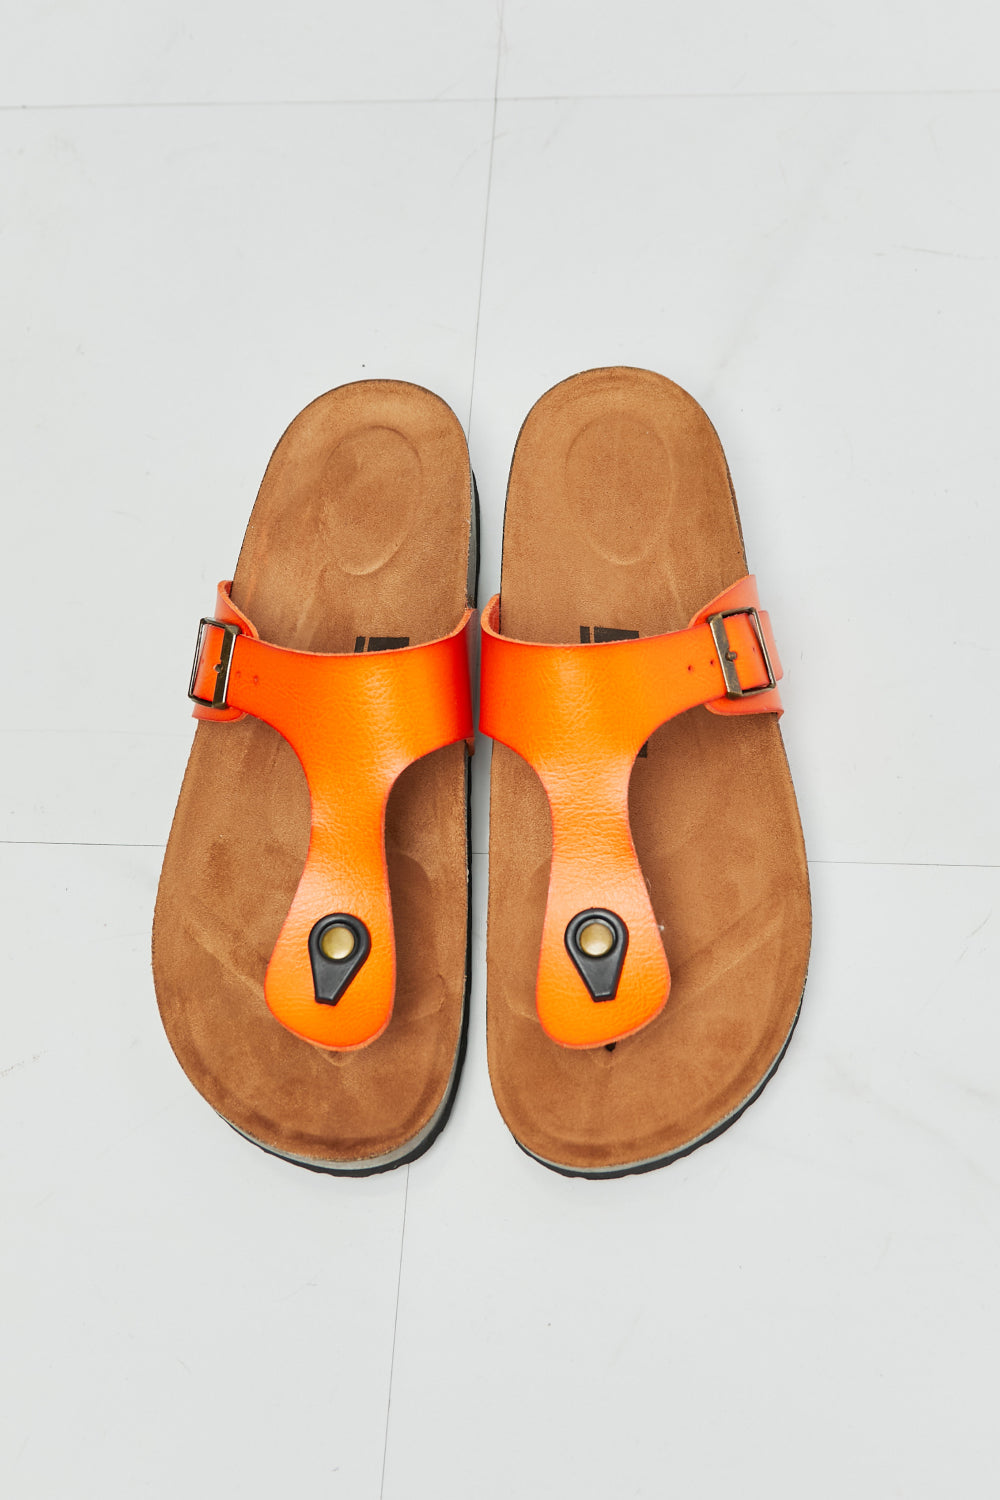 Drift Away T-Strap Sandal in Orange